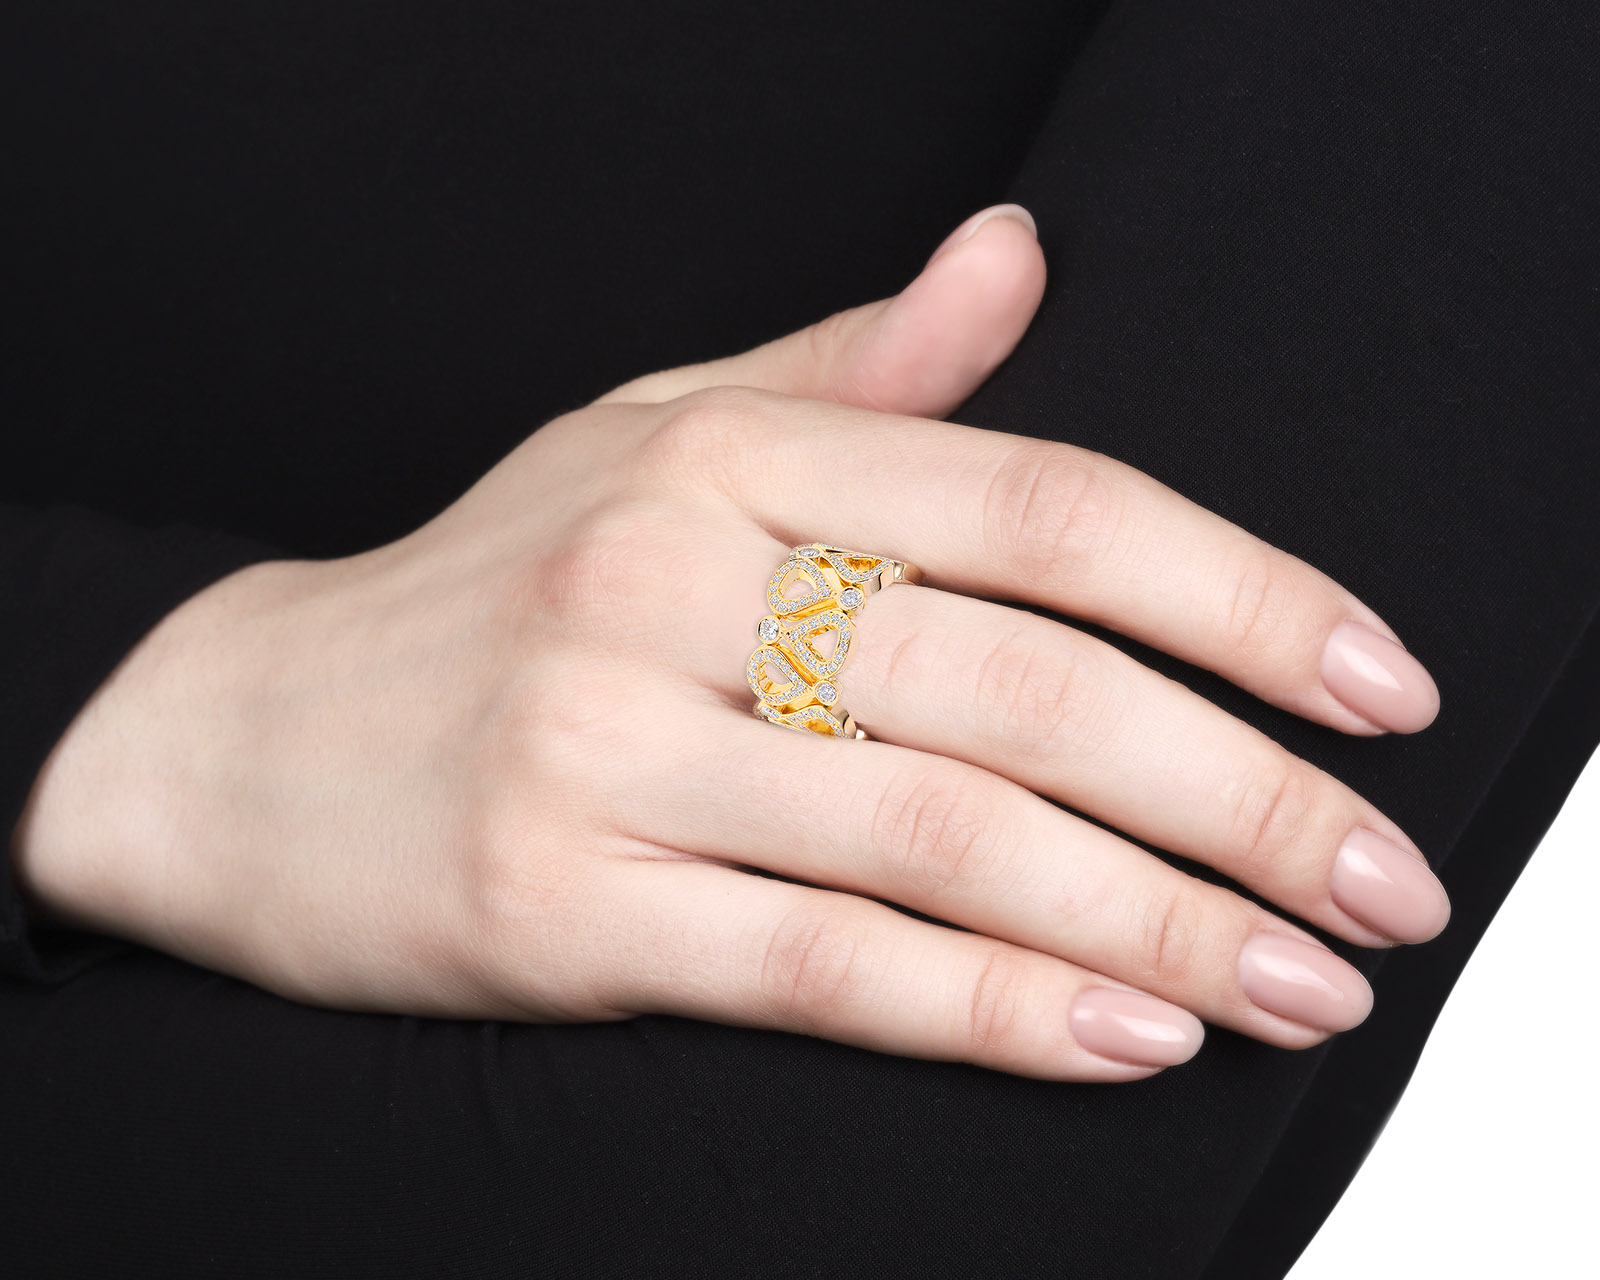 Оригинальное золотое кольцо Chopard Pushkin